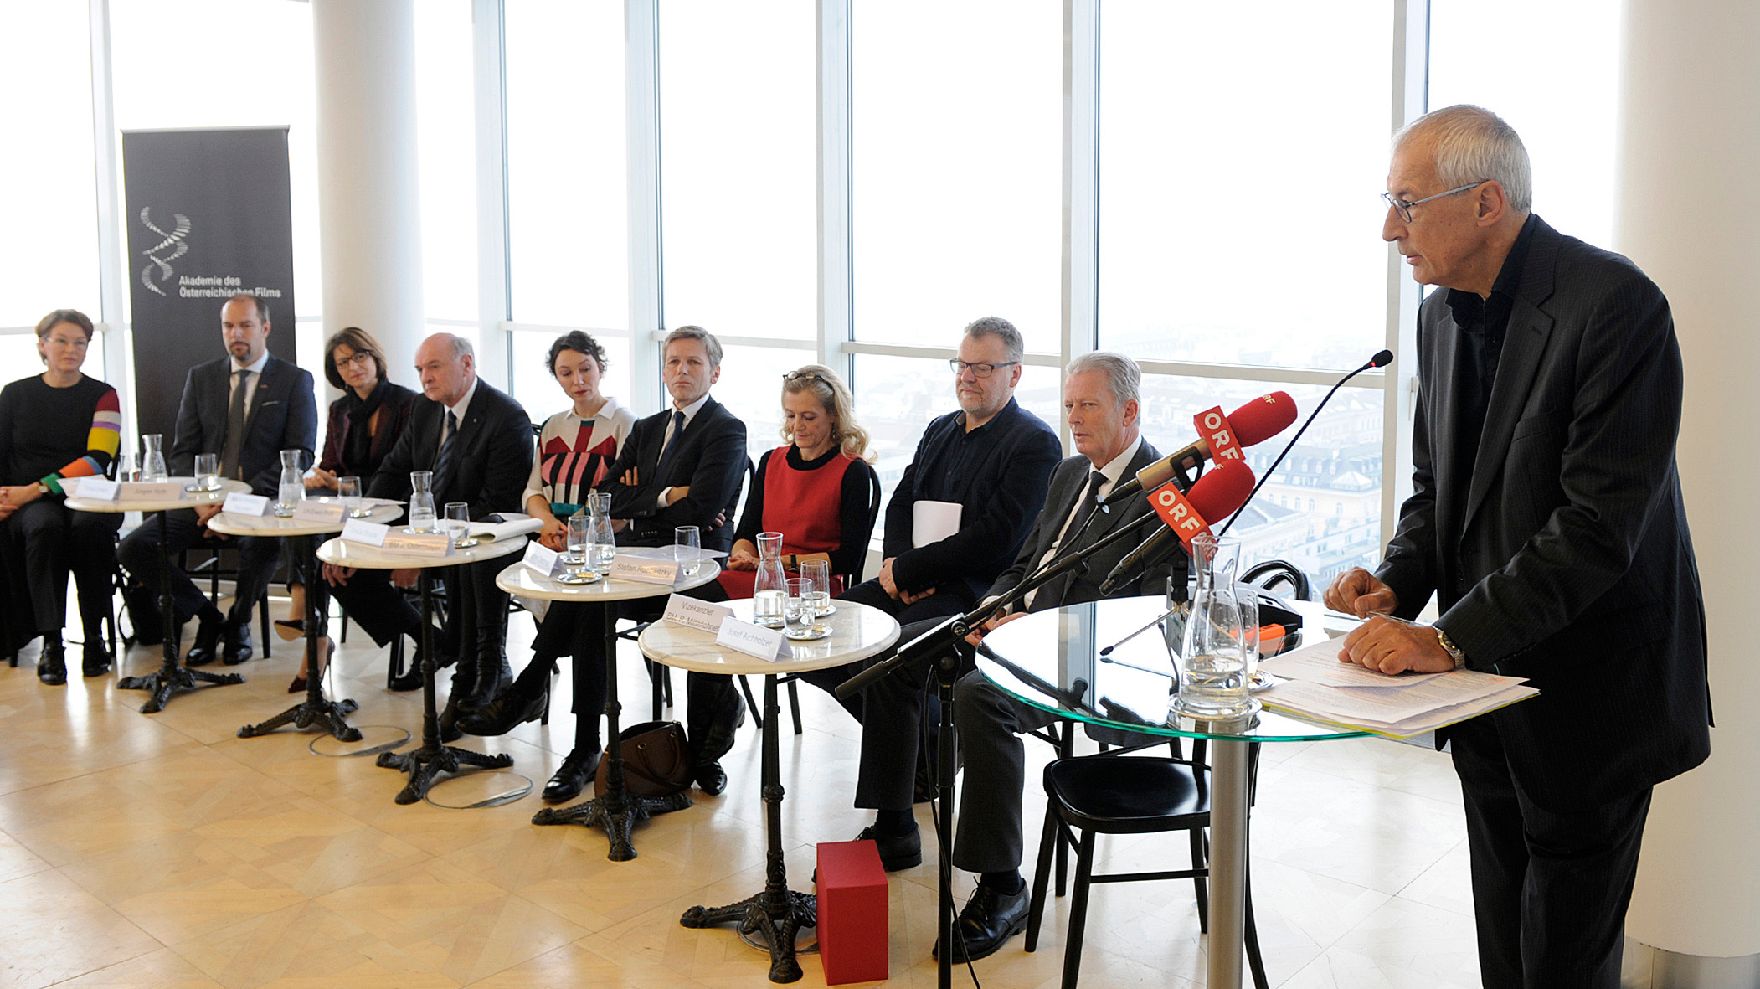 Am 16. Dezember 2015 fand im Ringturm die Nominierungspressekonferenz des Österreichischen Filmpreises statt. Im Bild Josef Aichholzer (r.), Vorstand der Akademie des Österreichischen Films.